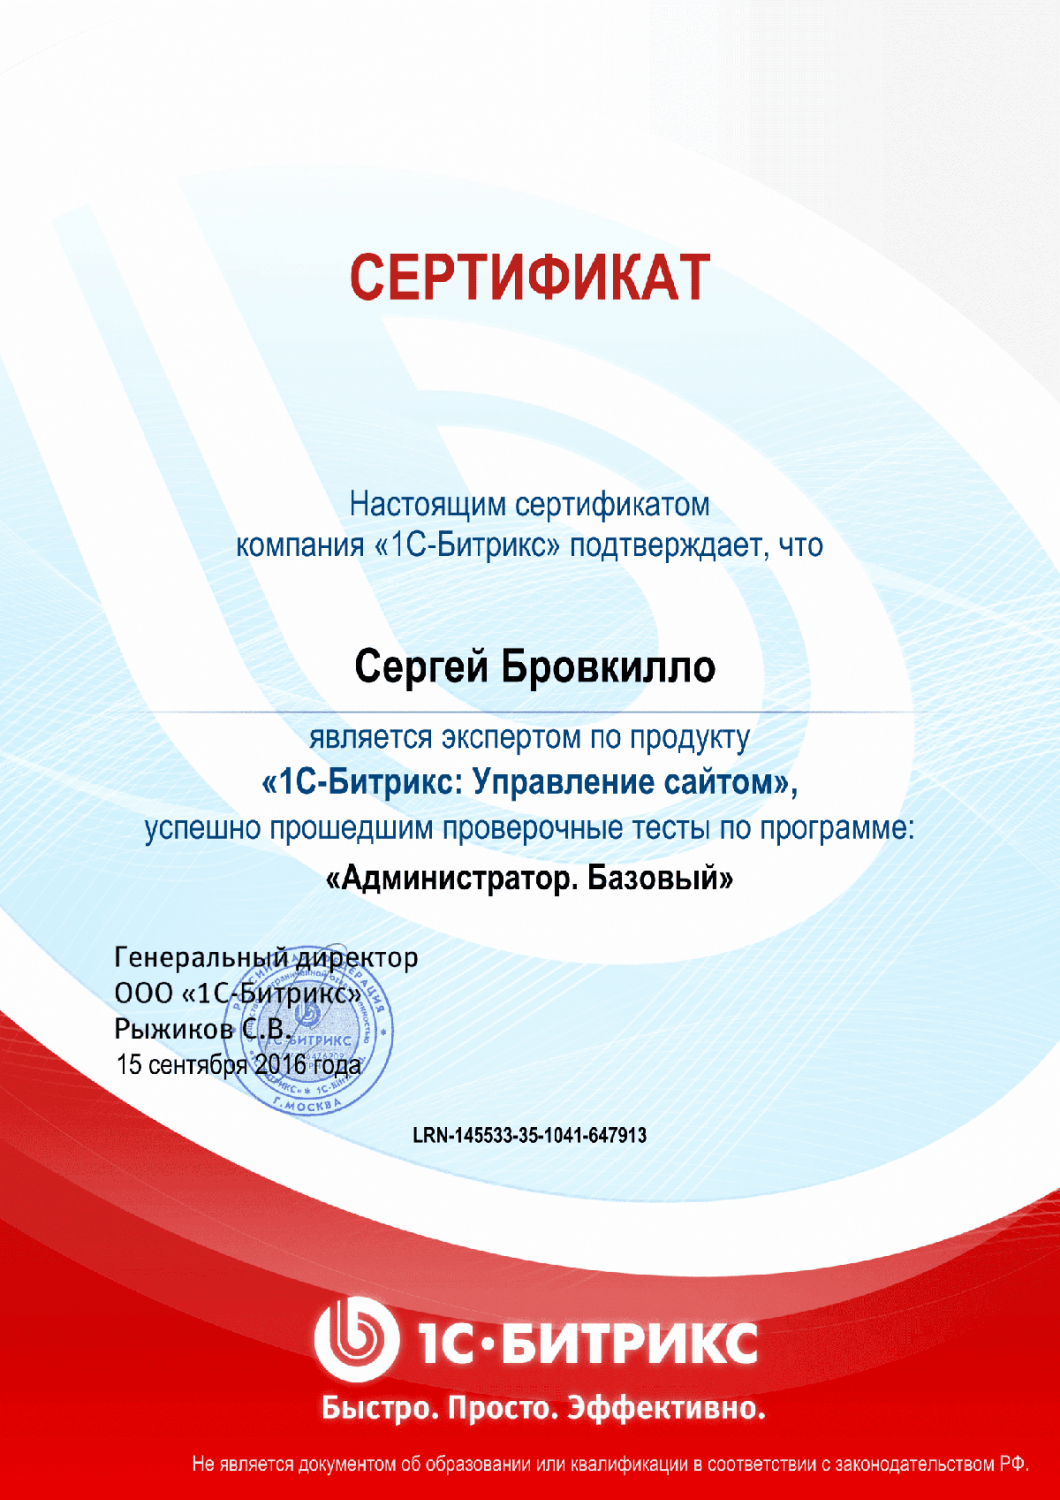 Сертификат эксперта по программе "Администратор. Базовый" в Сыктывкара